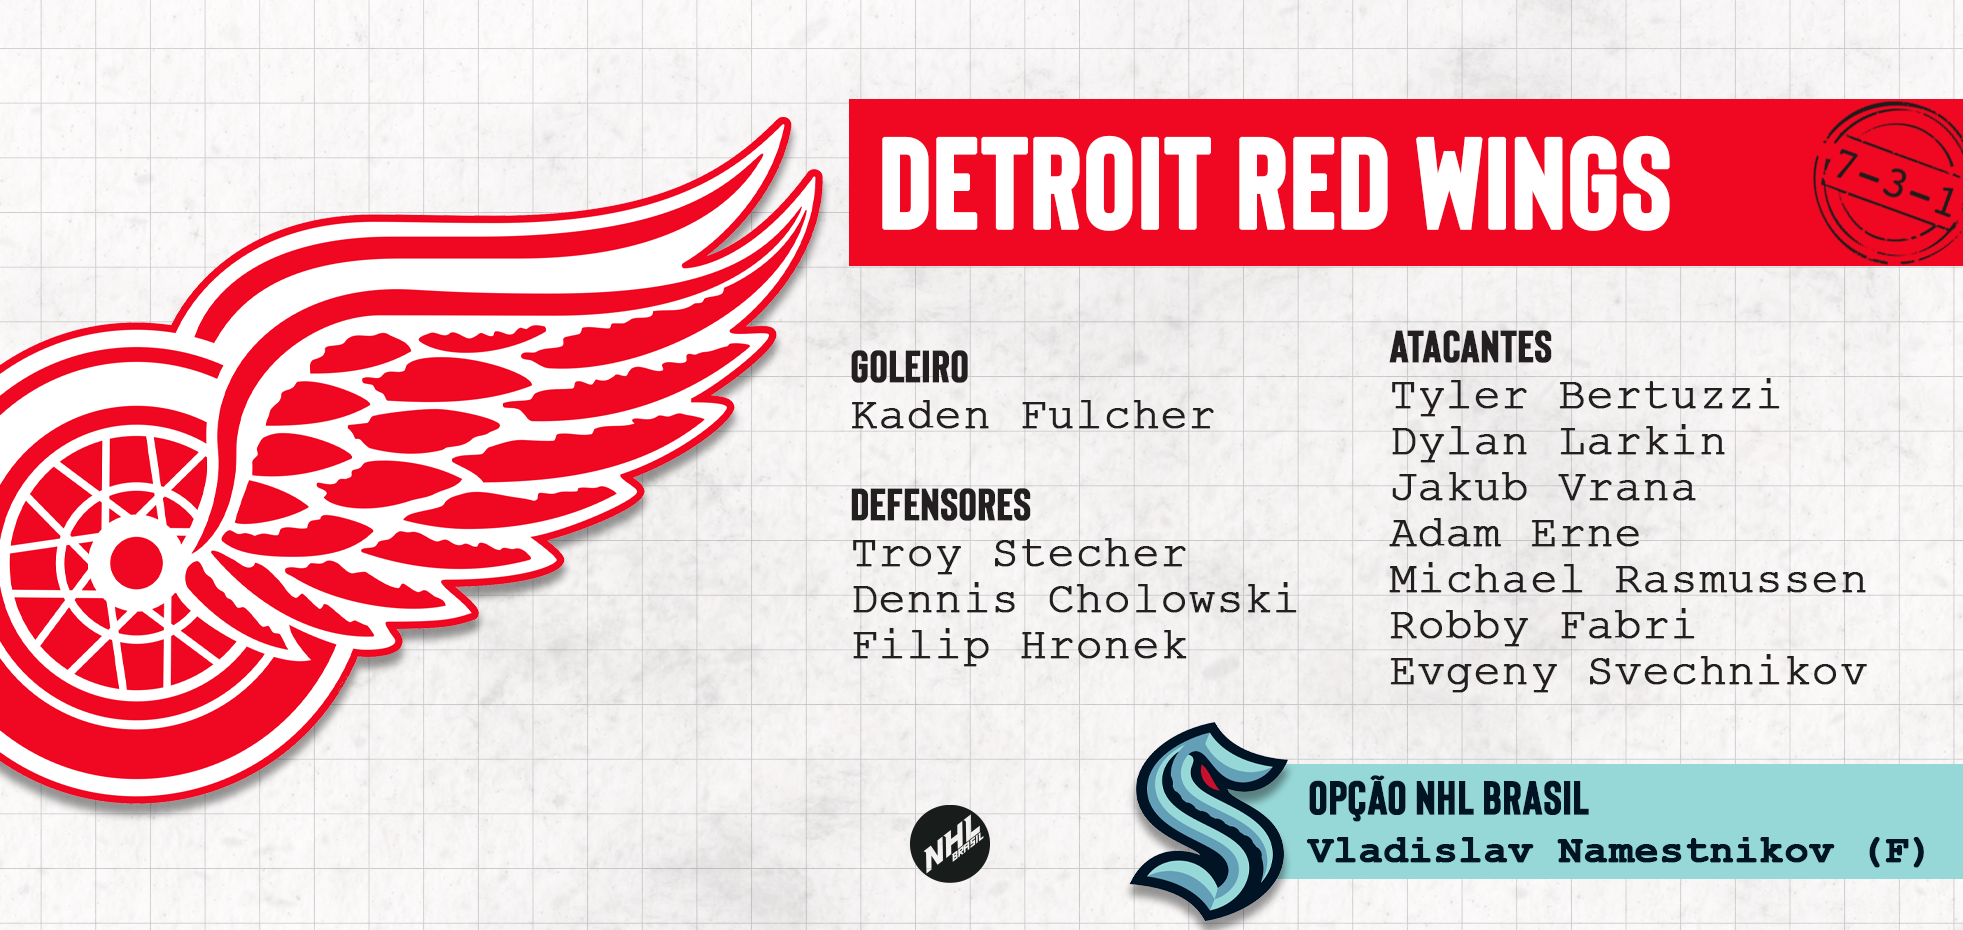 DETROIT RED WINGS - lista de jogadores protegidos na Divisão Atlântica da NHL